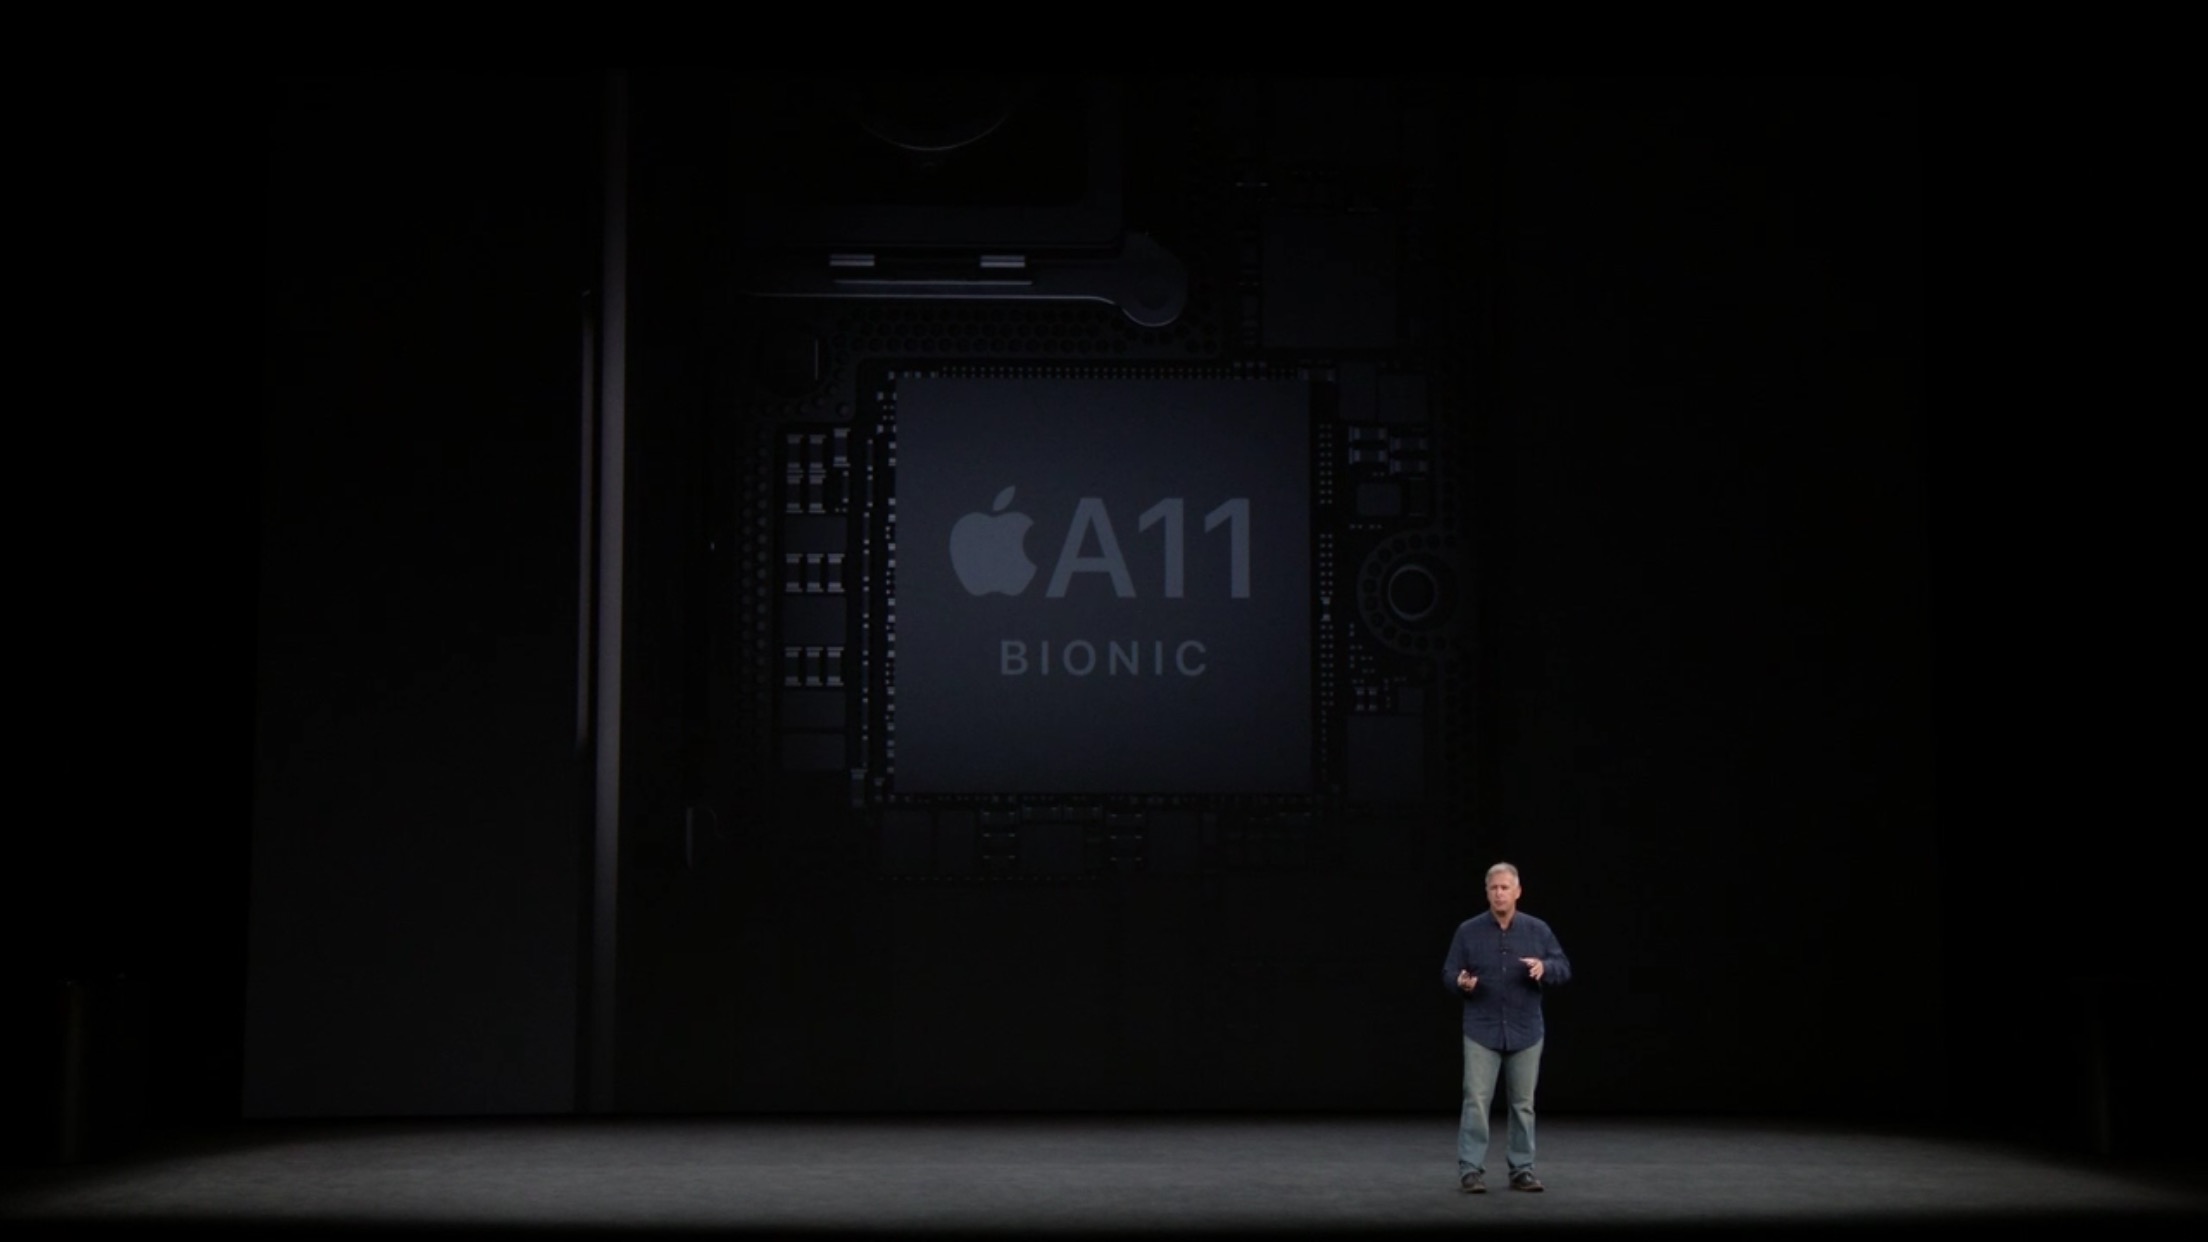 「iPhone X」の新機能、最もパワフルな「A11 Bionic」